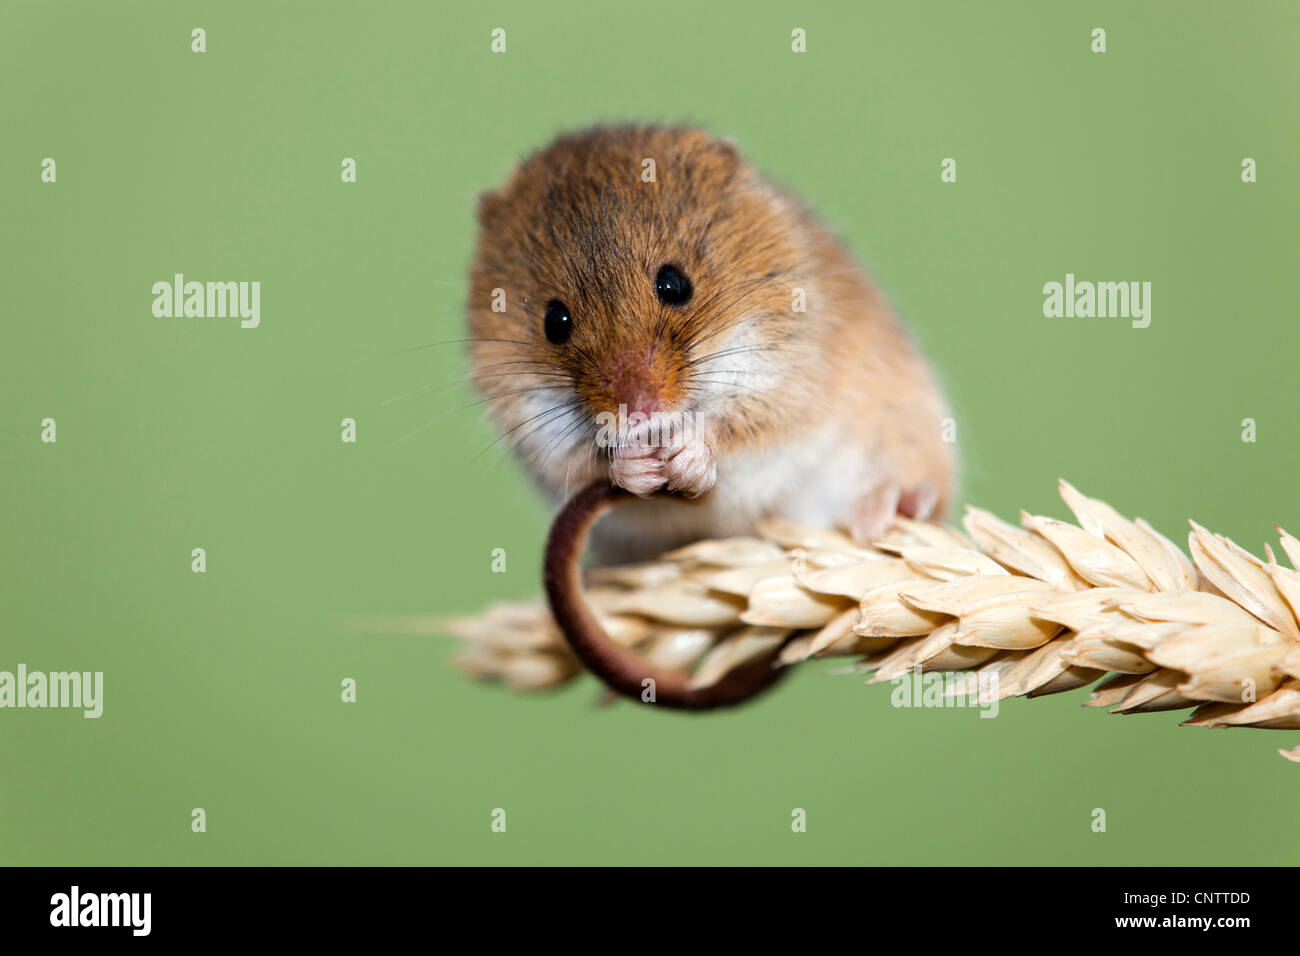 Ratón de cosecha; Micromys minutus; en mazorca de maíz; UK Foto de stock